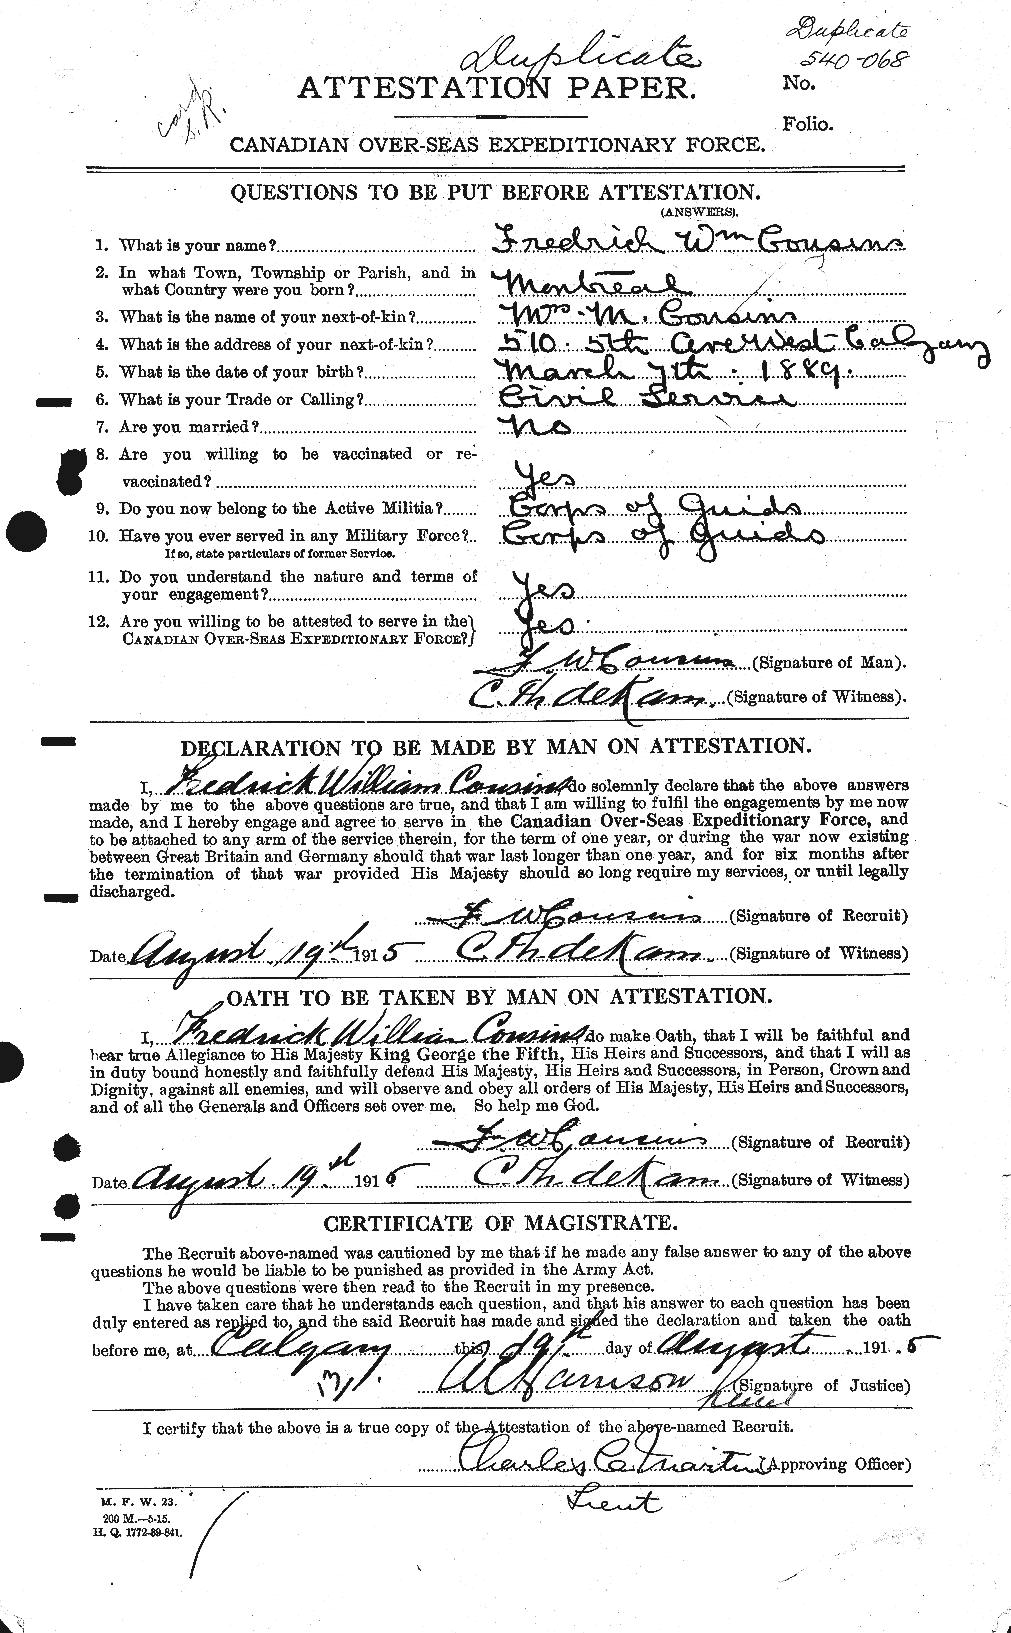 Dossiers du Personnel de la Première Guerre mondiale - CEC 058345a